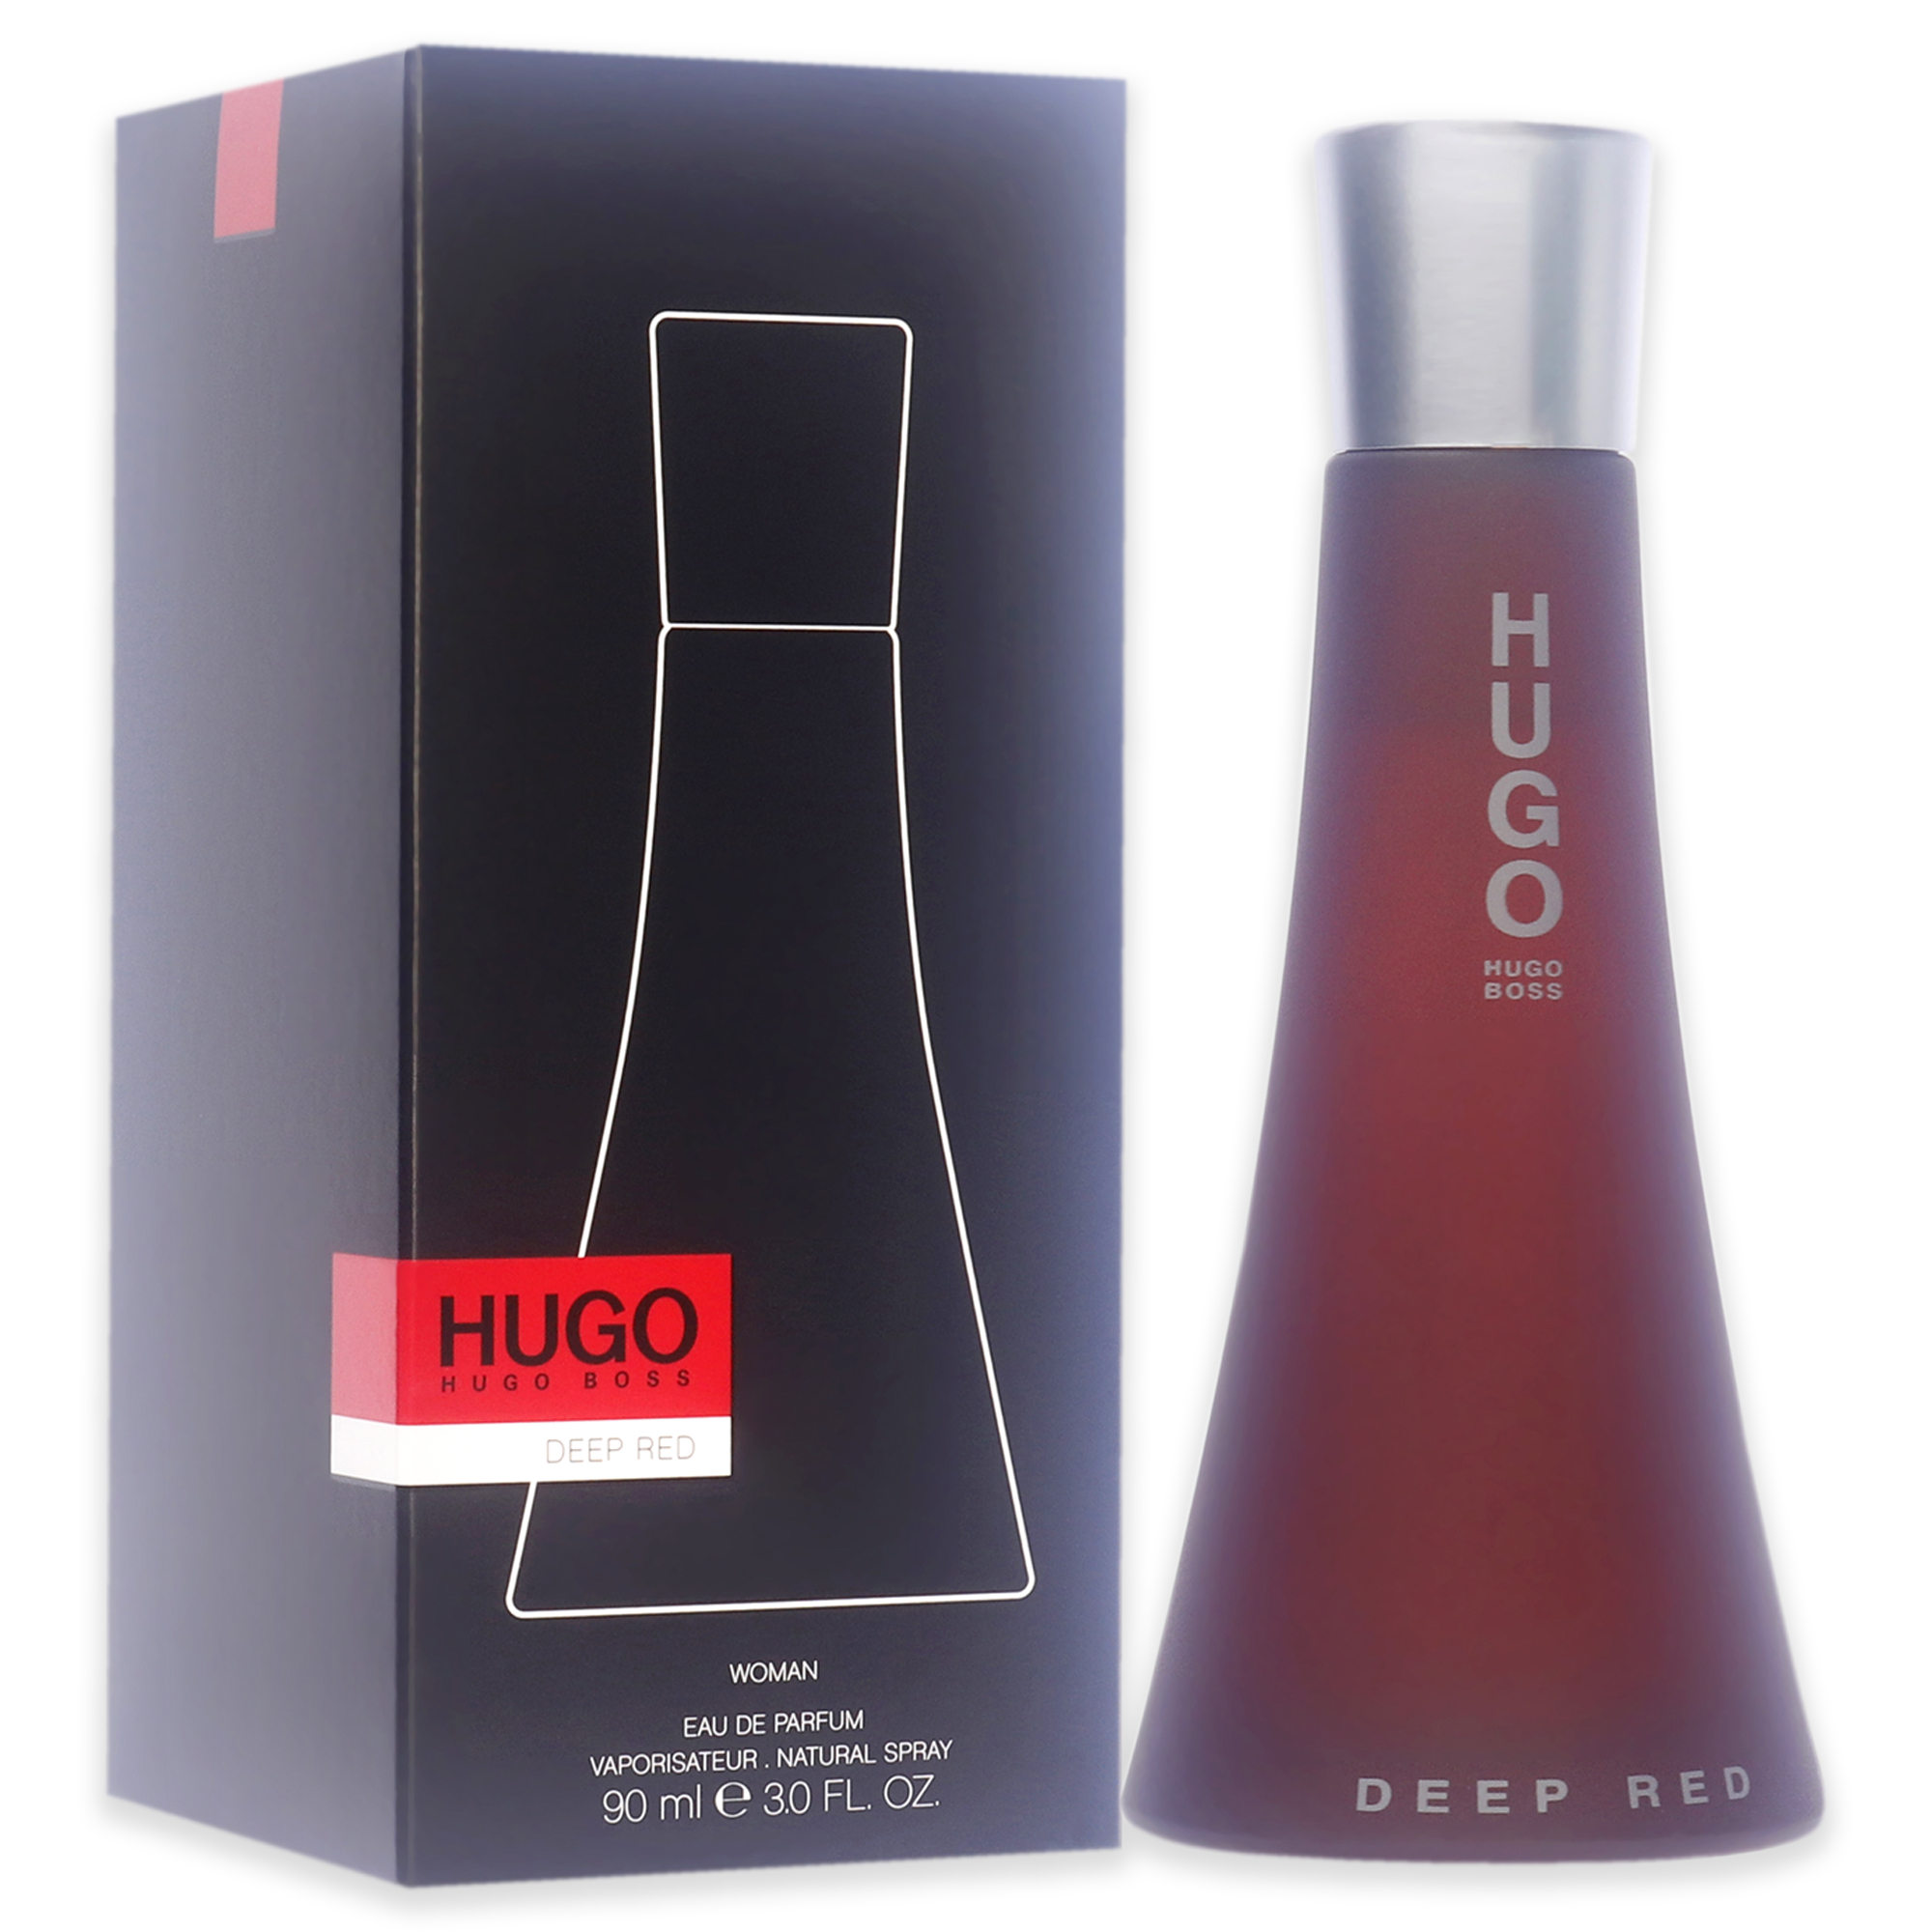 Hugo Boss Deep Red Eau de Parfum, Perfume for Women, 3 oz - image 3 of 6